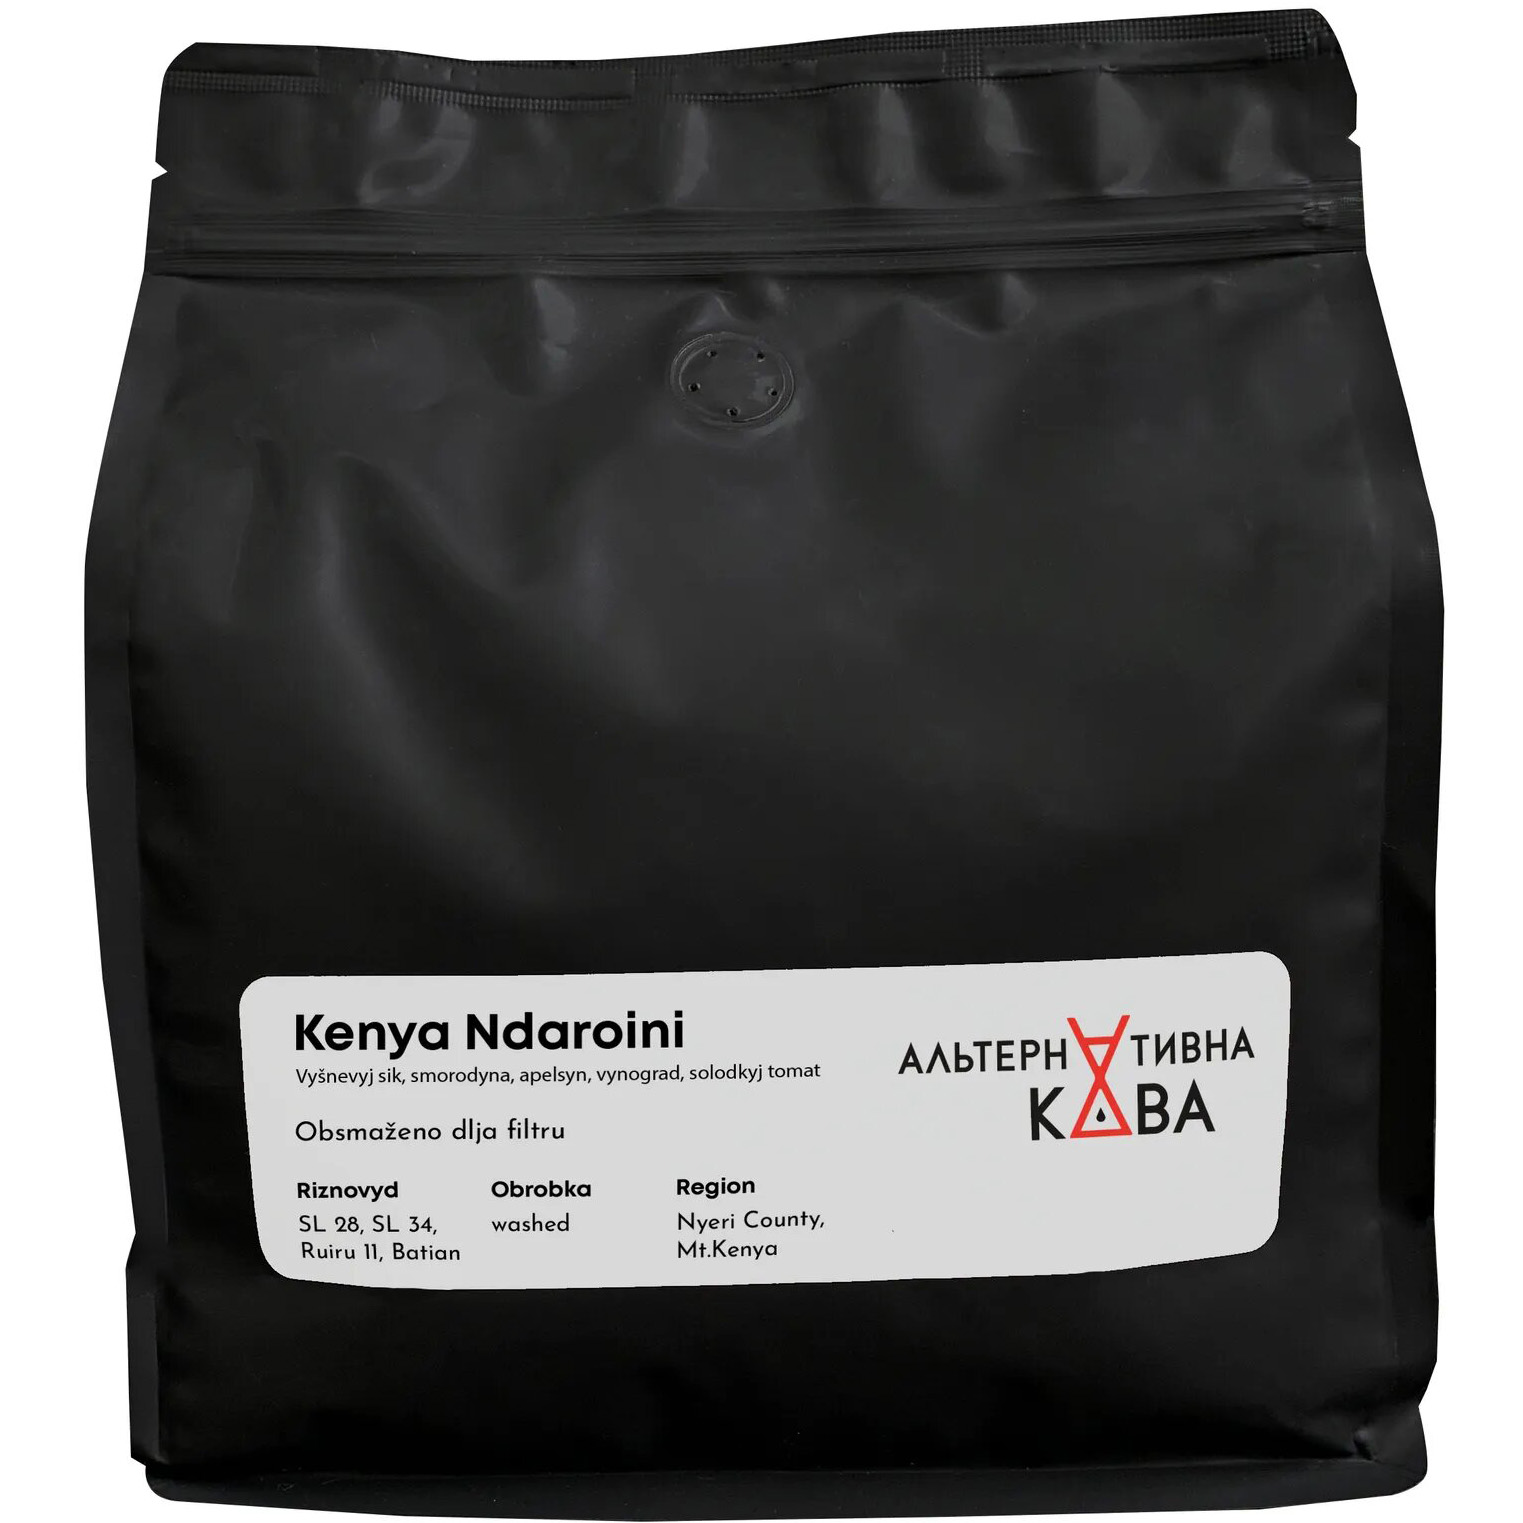 Кофе в зернах Альтернативна Кава Kenya Ndaroini арабика 1 кг - фото 1